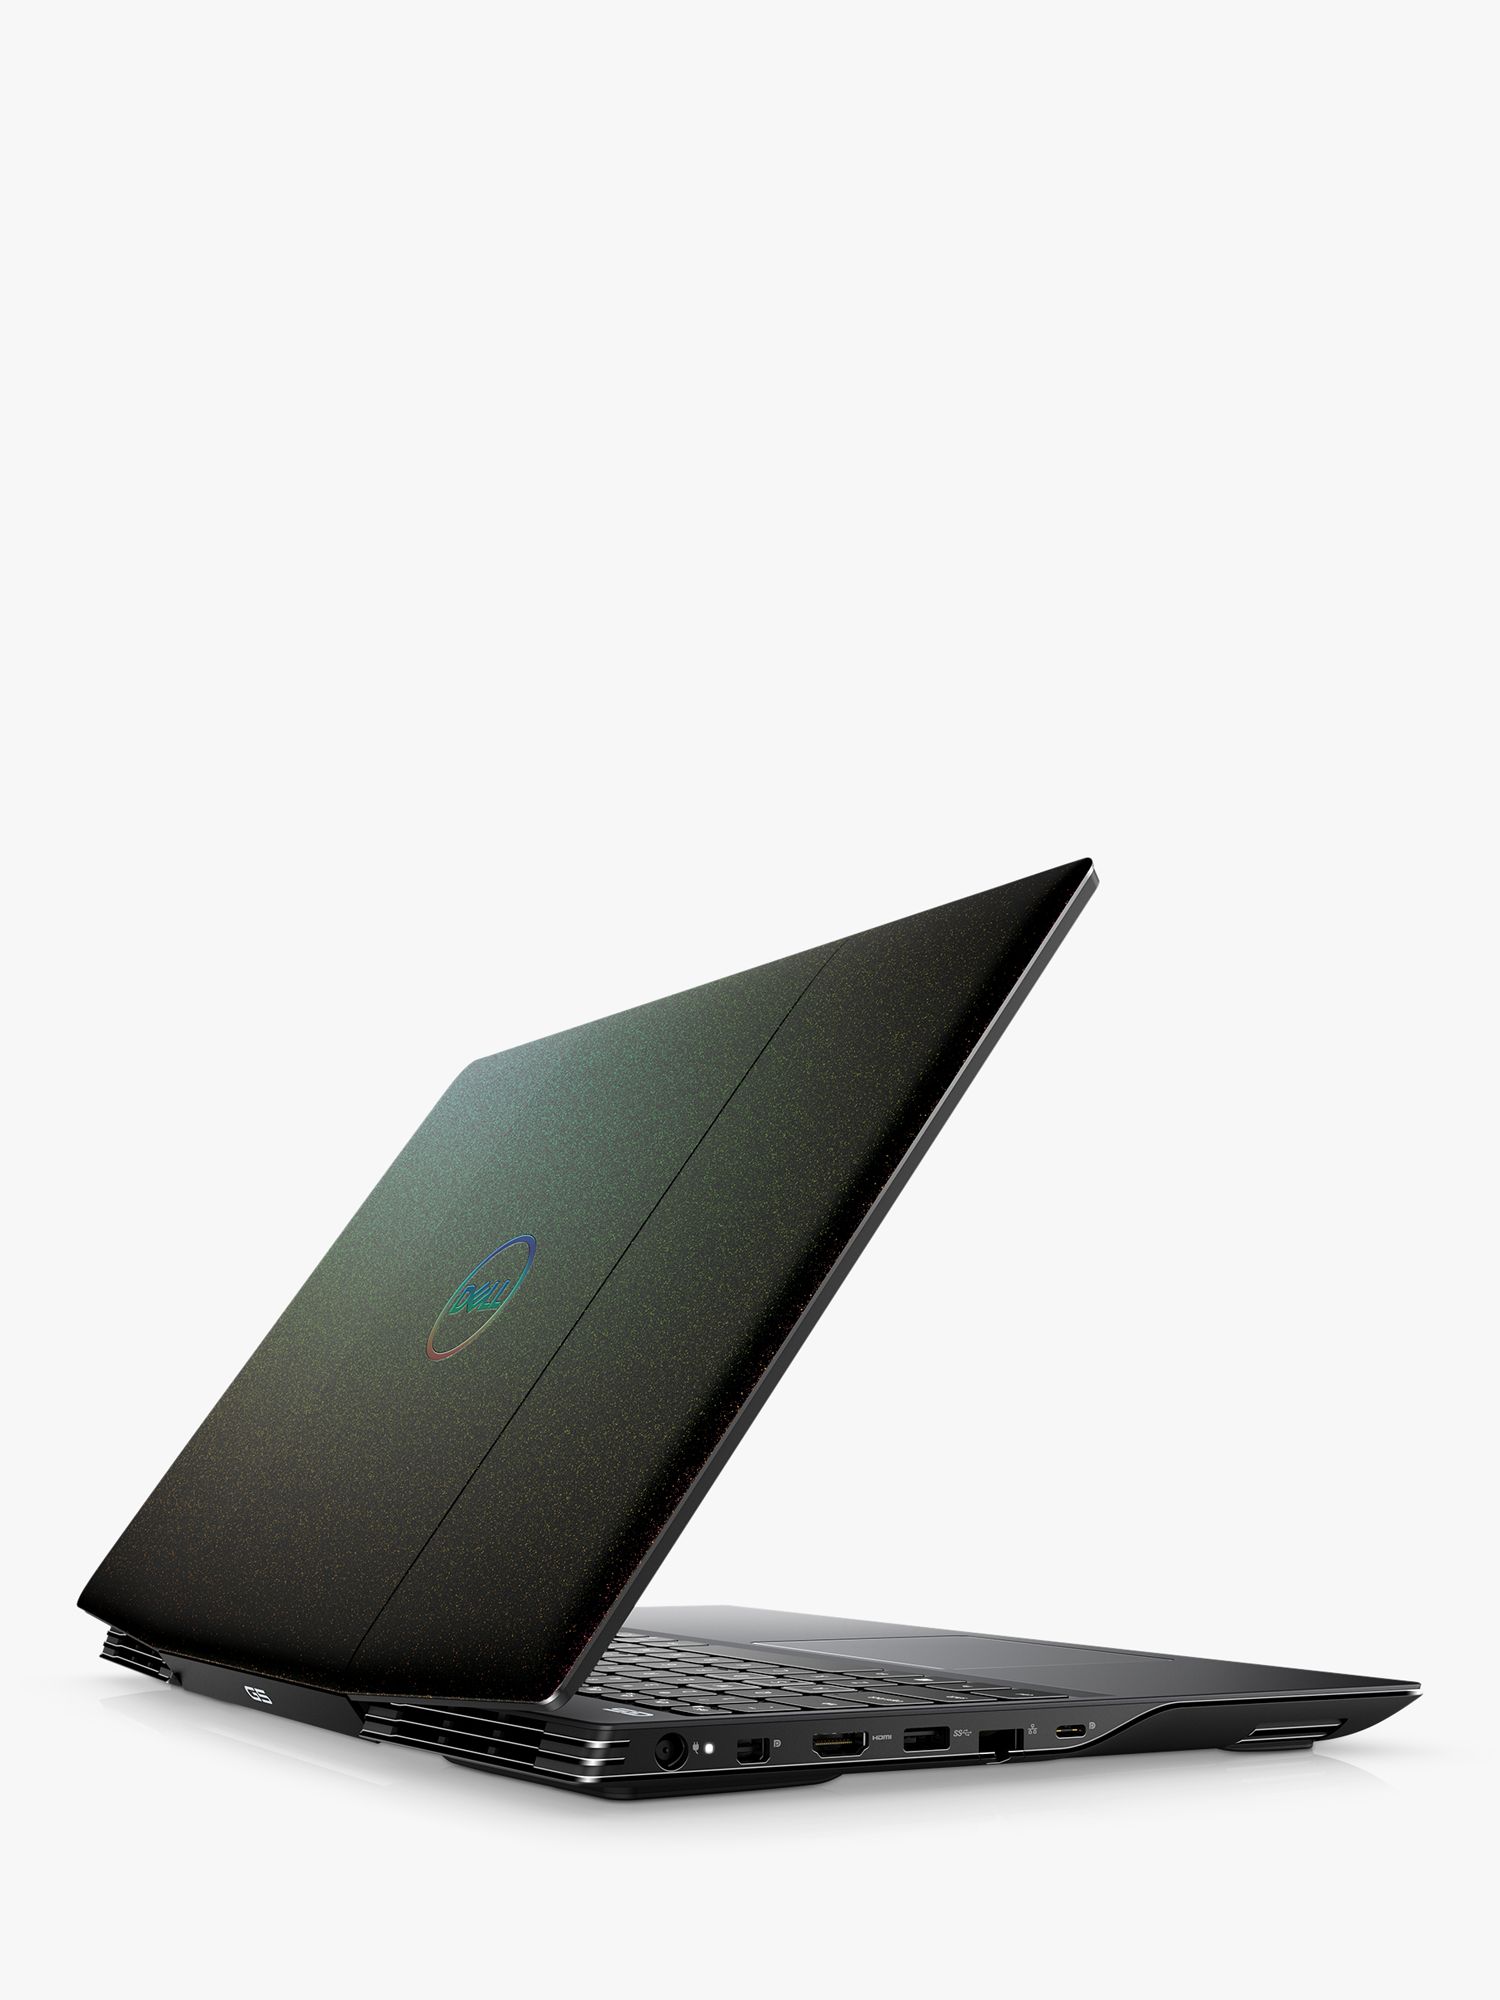 Dell G3 15 3500 Laptop Intel Core I5 Processor 8gb Ram 512gb Ssd 15 6 Full Hd Black